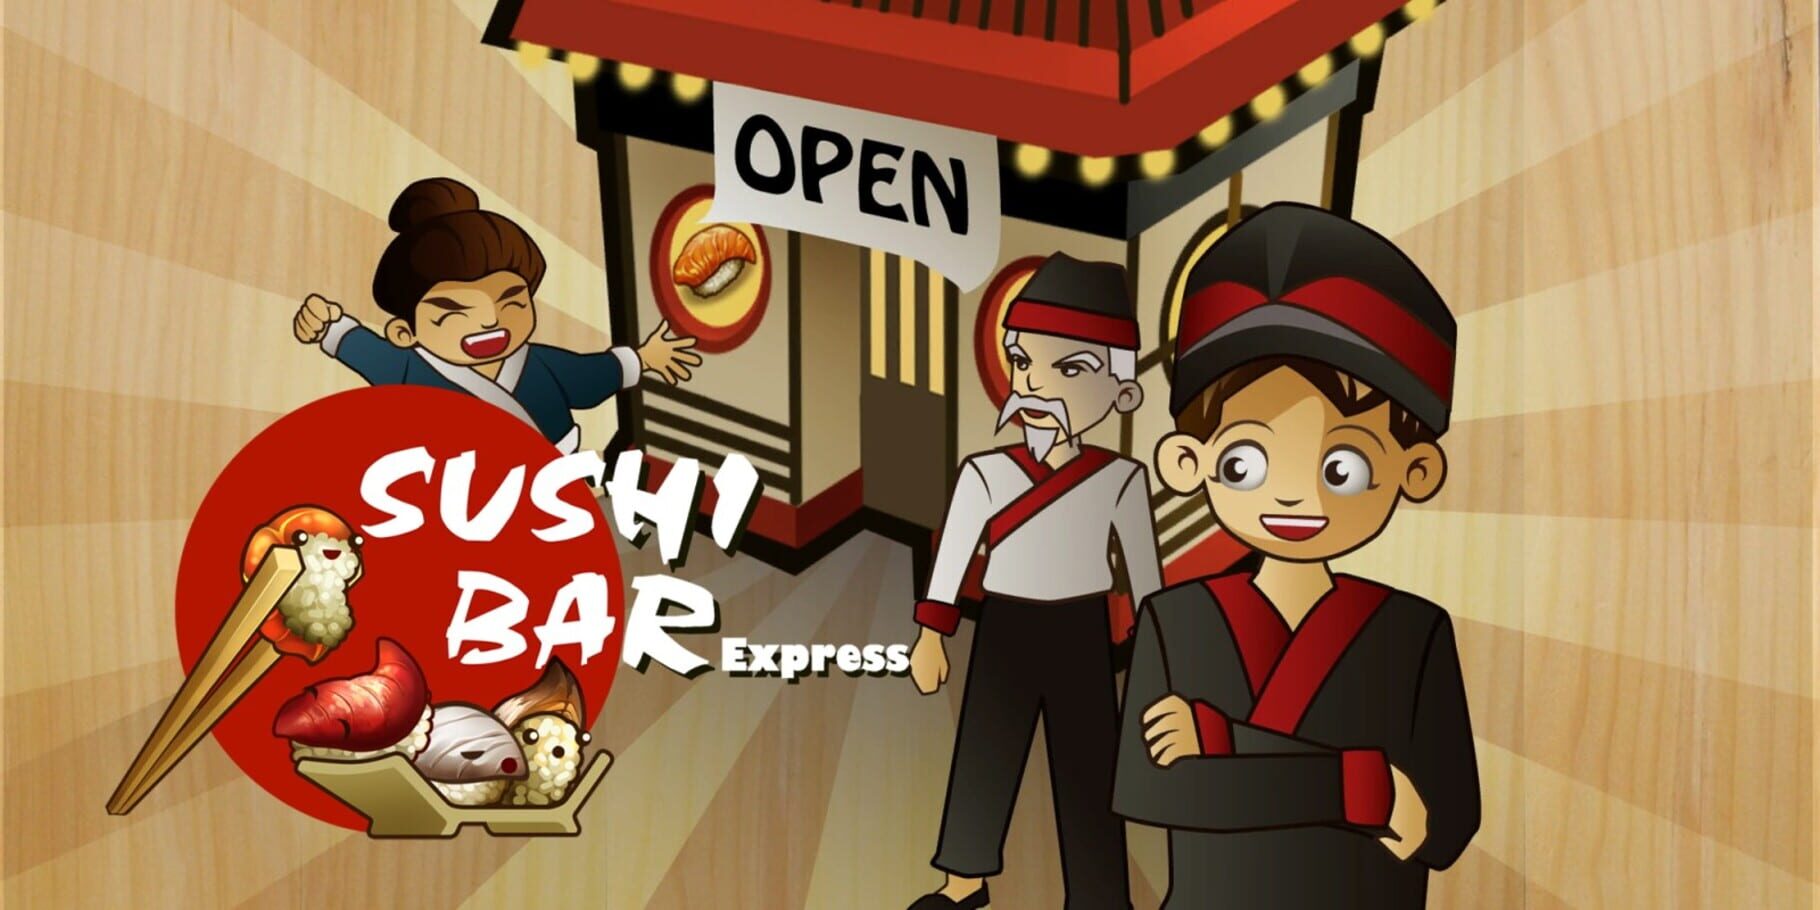 Arte - Sushi Bar Express